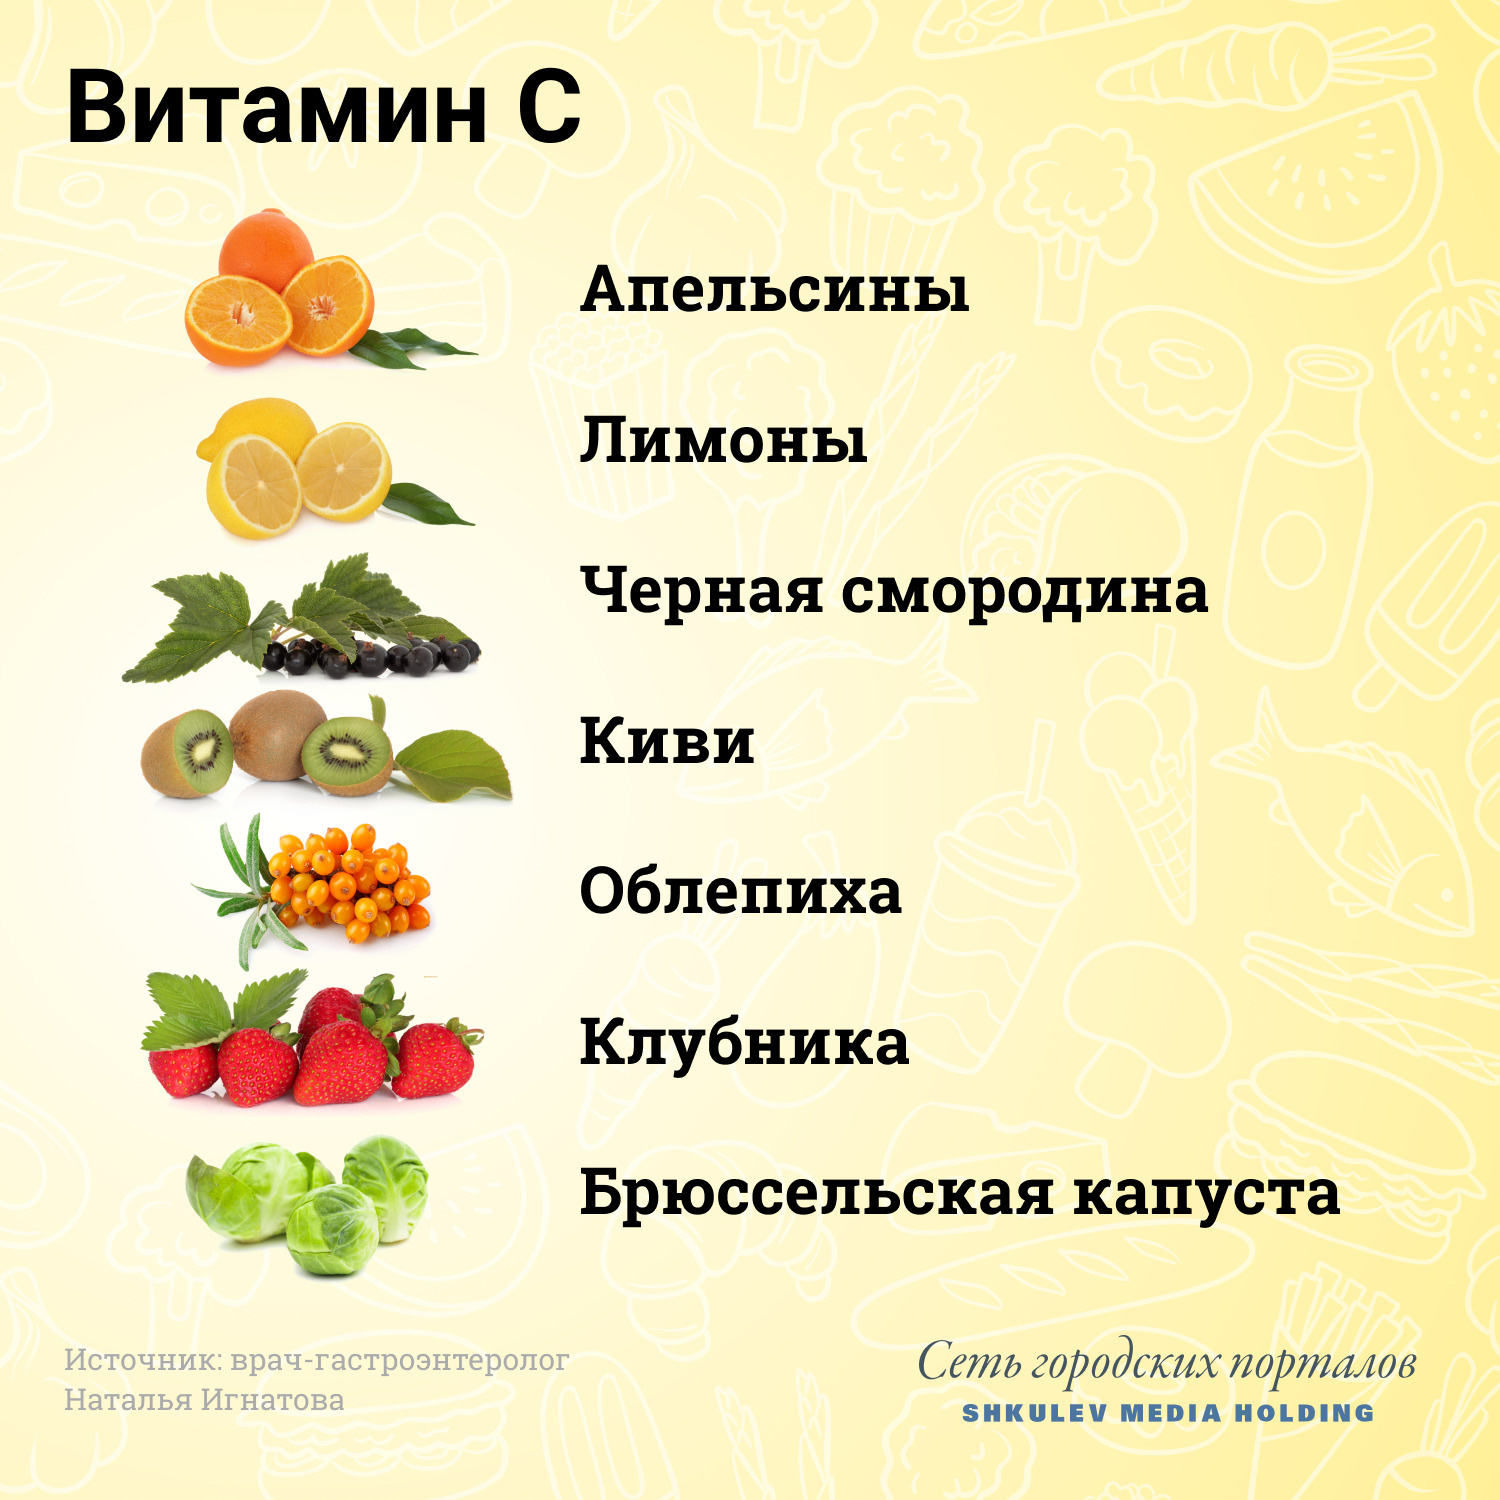 Полезные свойства витамина С